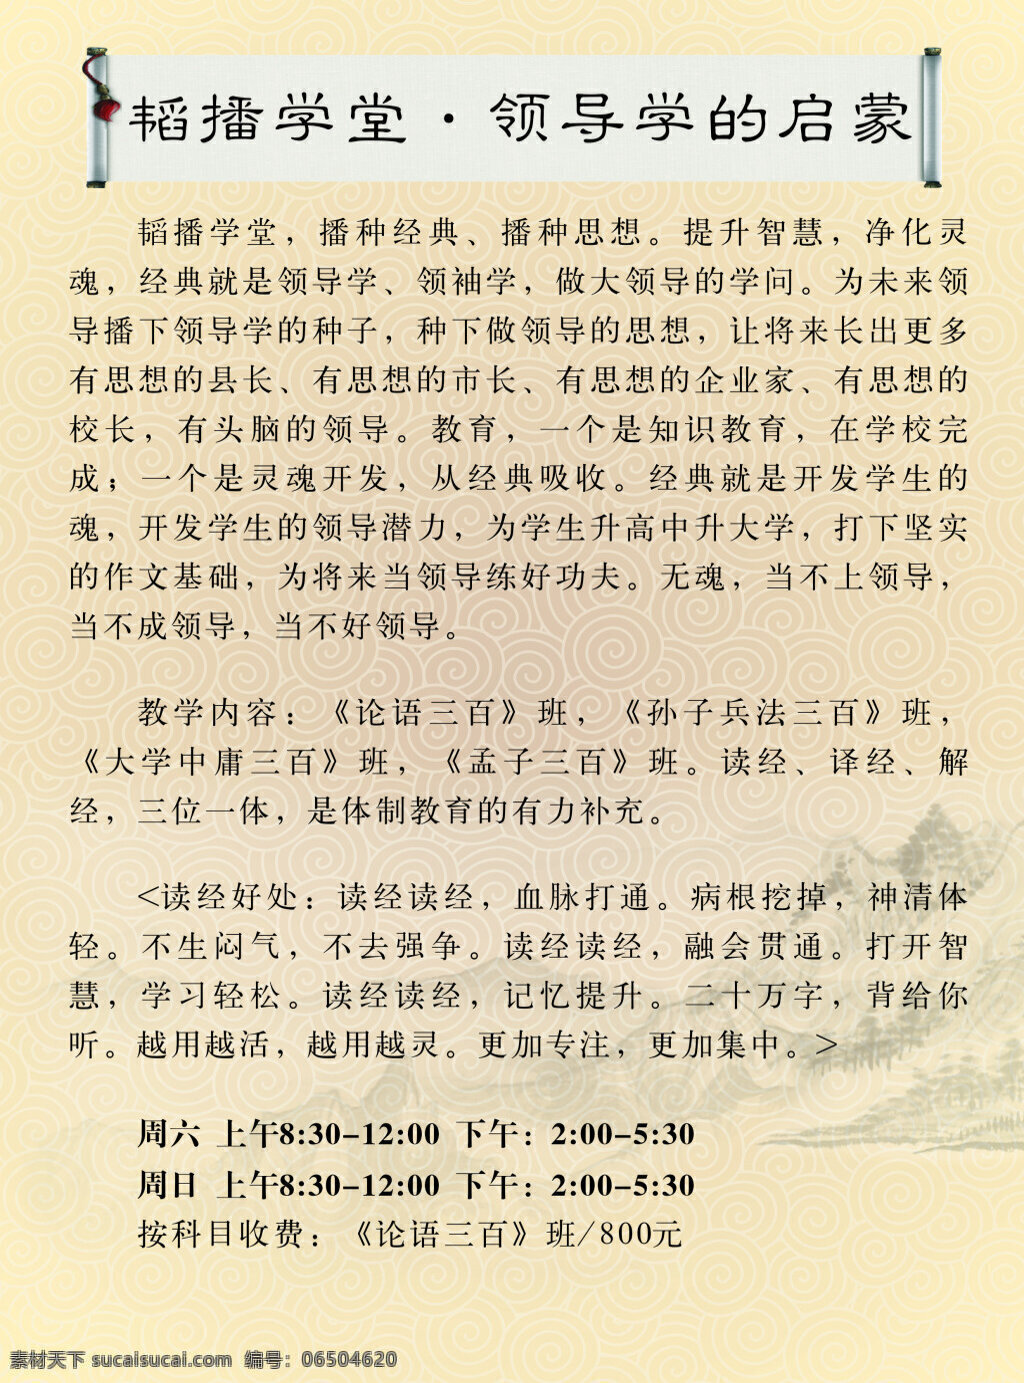 书院 背面 传单 彩页 宣传单 中华 传统文化 论语 弟子 规 老子